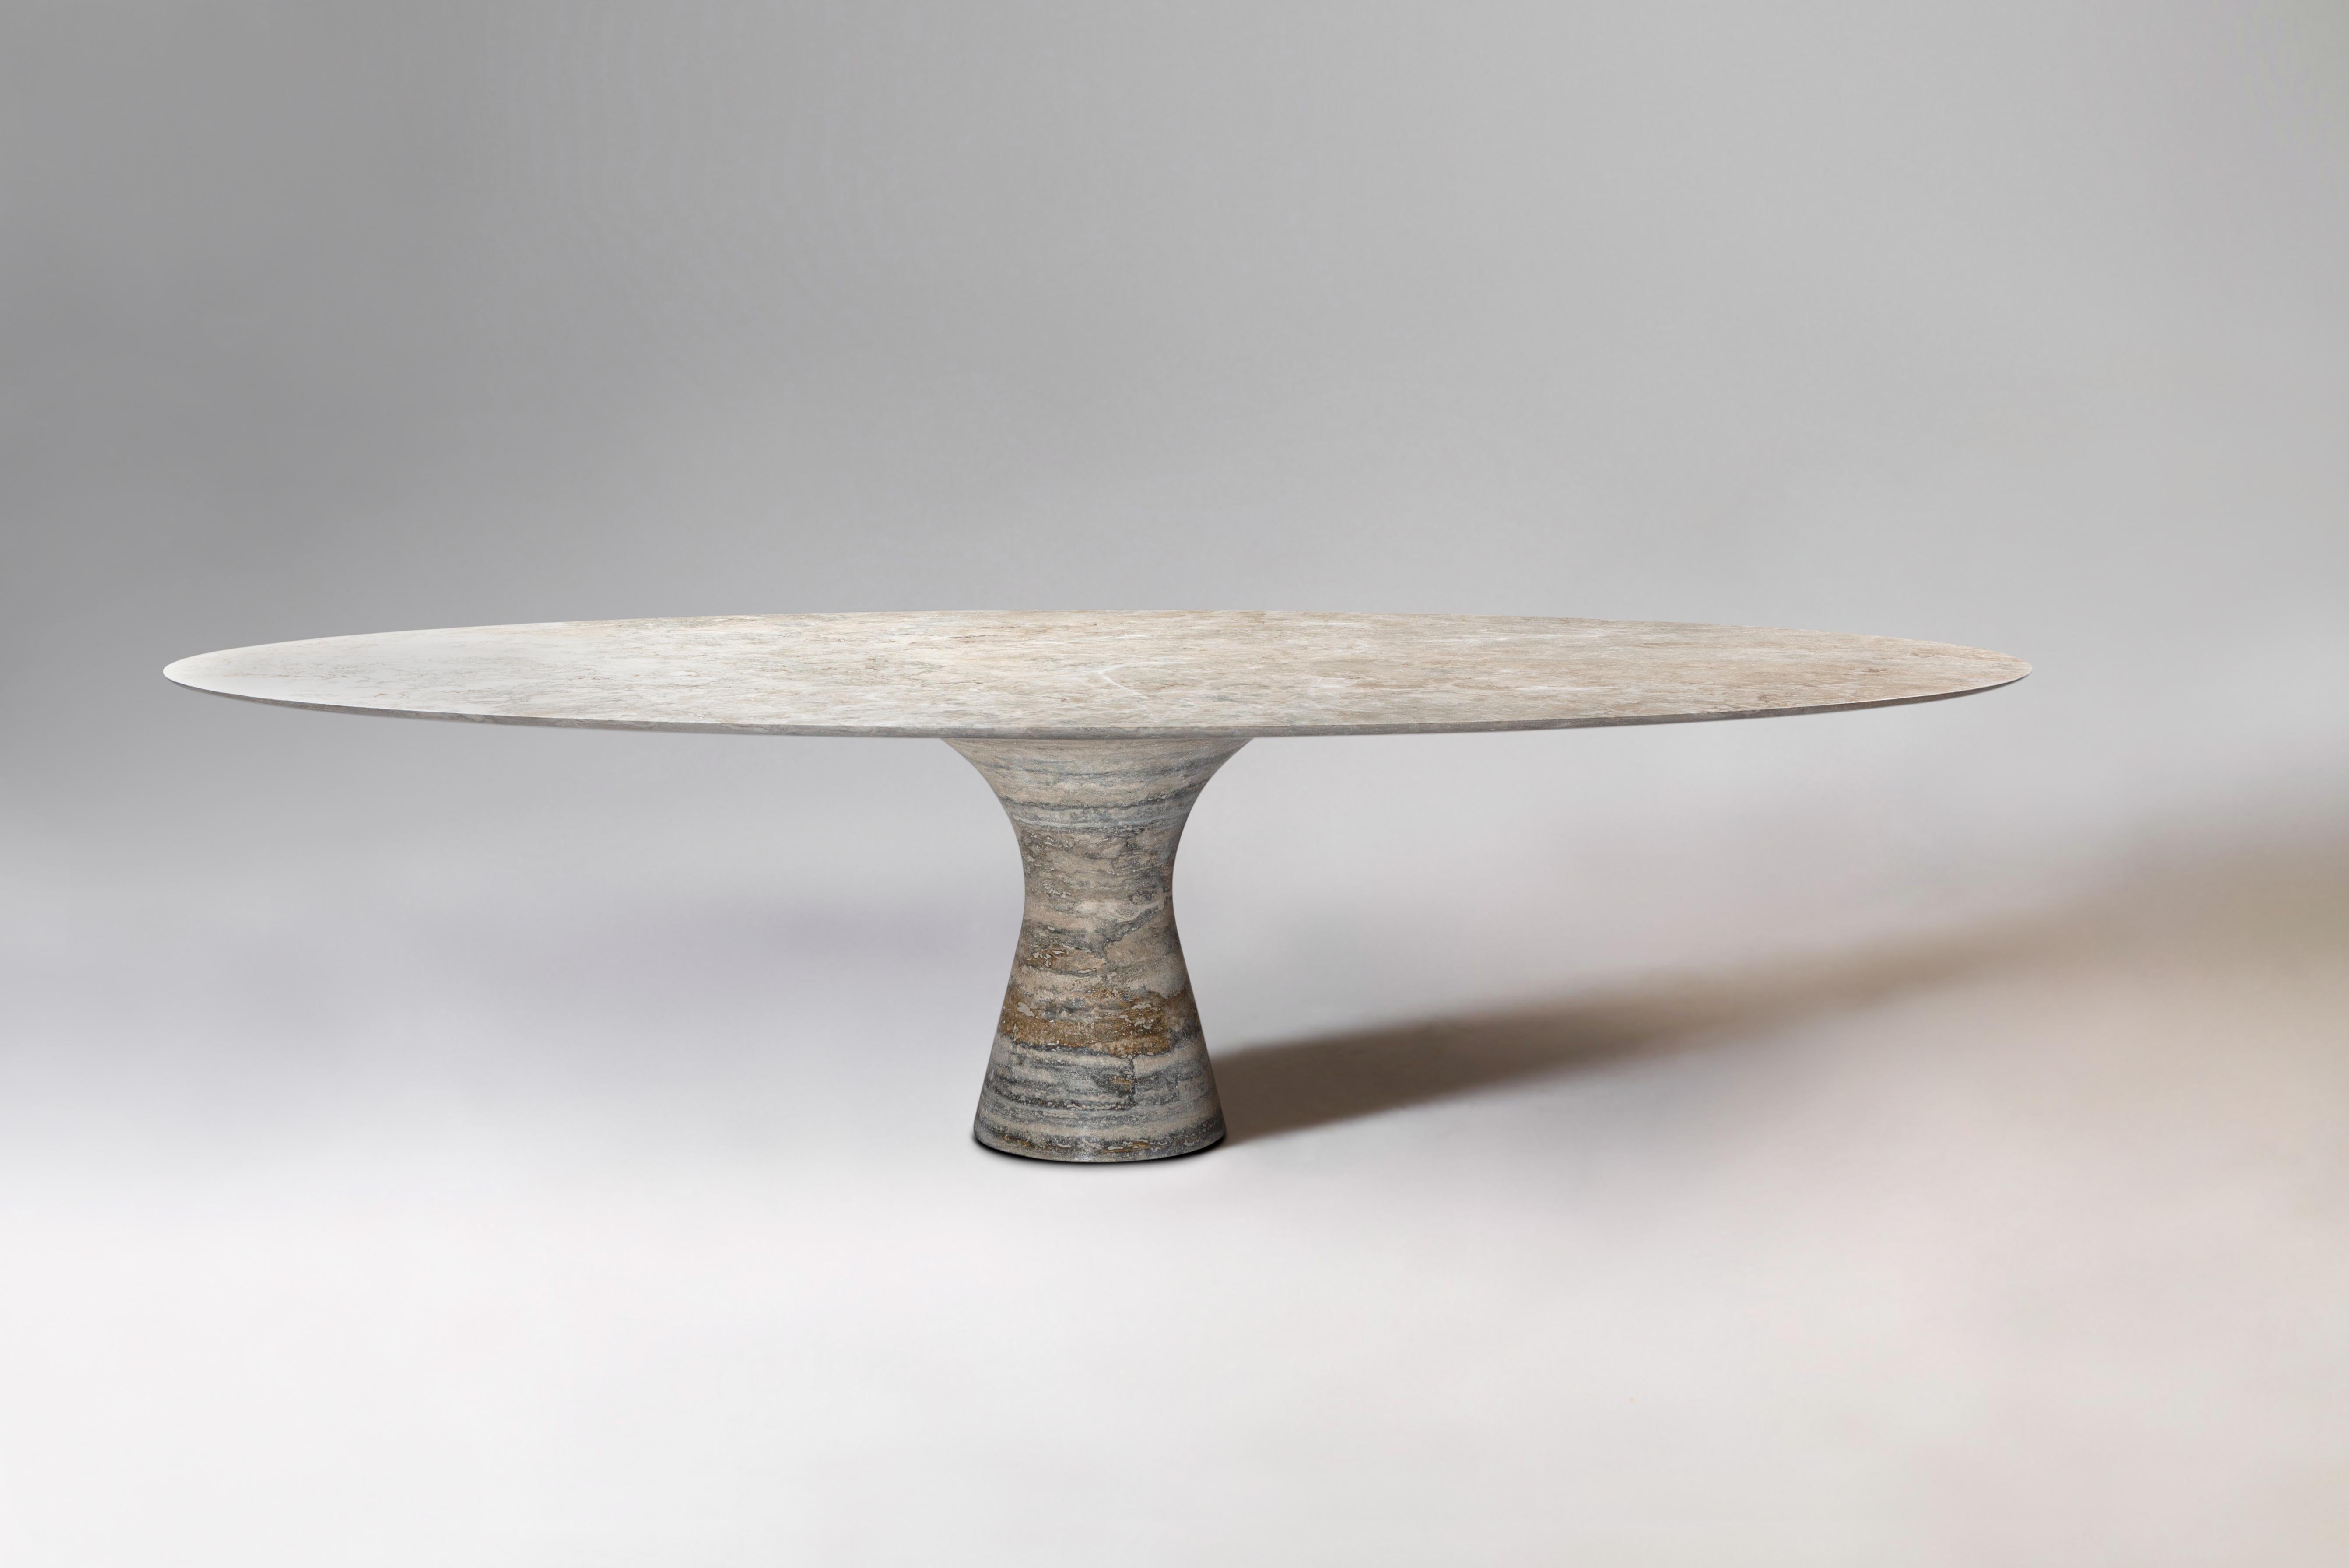 Table ovale en marbre contemporain Travertino Silver Refined 130/27
Dimensions : 130 x 27 cm : 130 x 27 cm
MATERIAL : Argent Travertino 

Angelo est l'essence même d'une table ronde en pierre naturelle, une forme sculpturale dans un matériau robuste